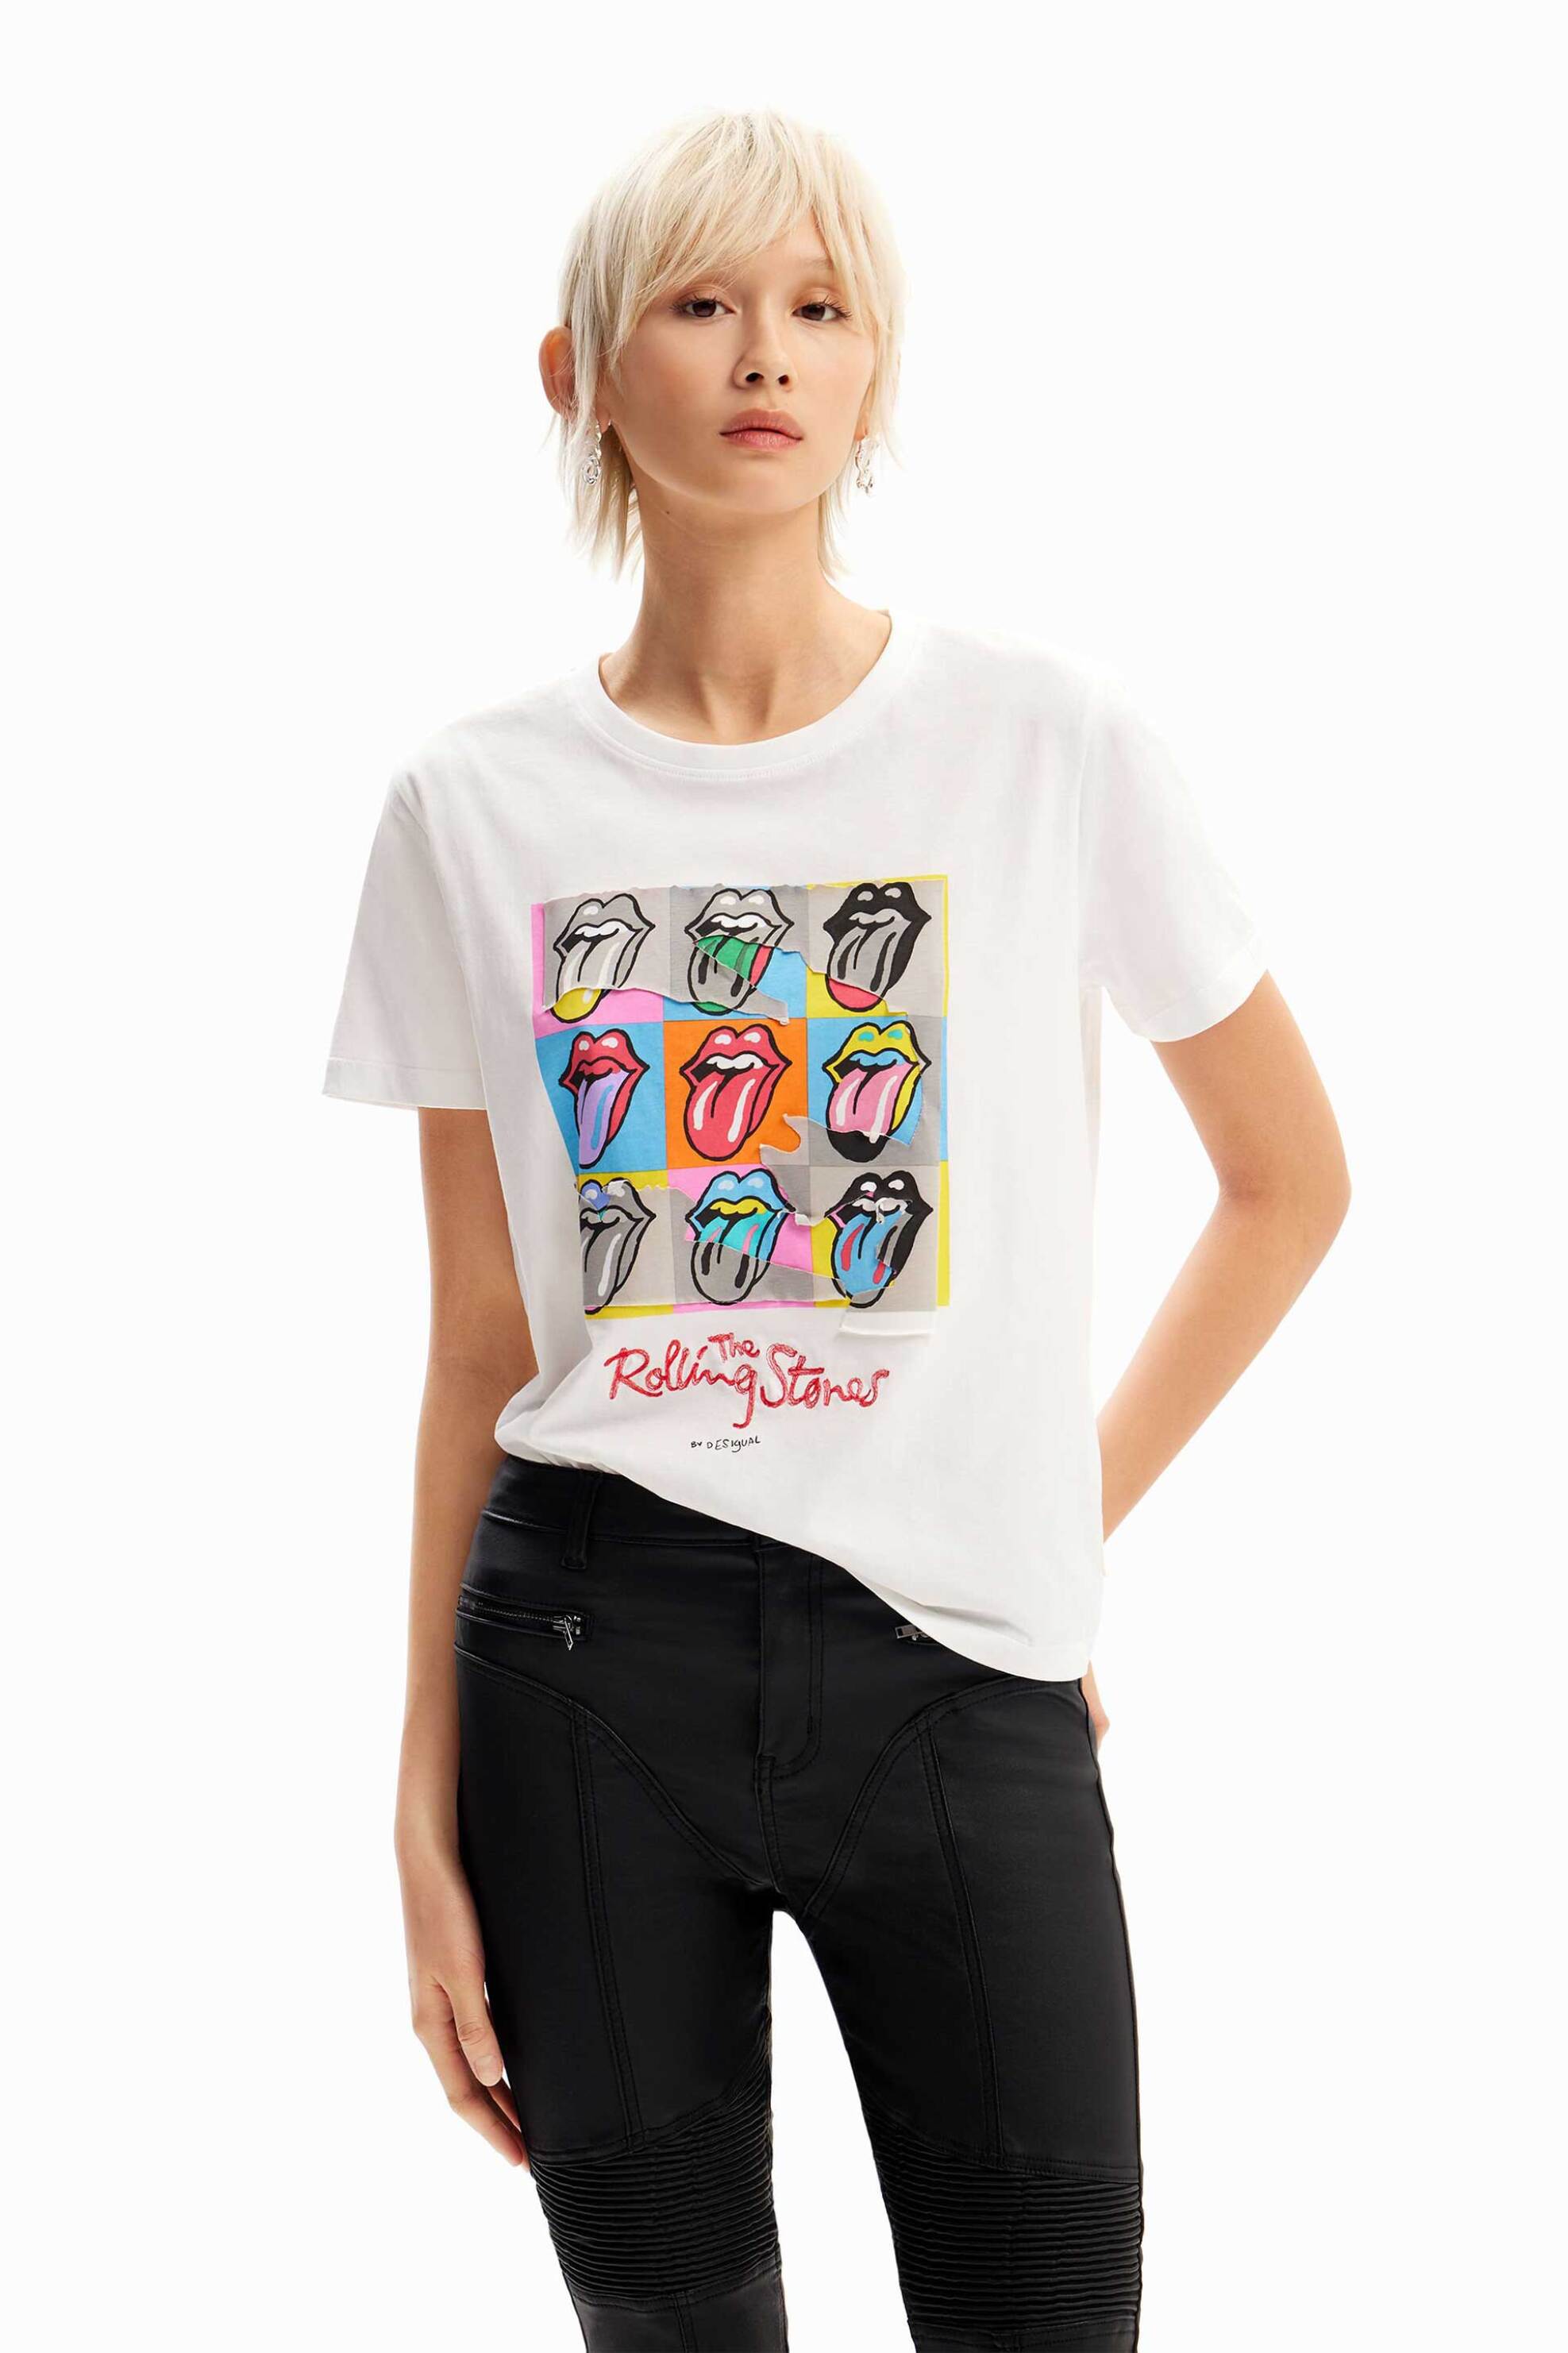 Γυναικεία Ρούχα & Αξεσουάρ > Γυναικεία Ρούχα > Γυναικεία Τοπ > Γυναικεία T-Shirts Desigual γυναικείο βαμβακερό T-shirt με πολύχρωμο print μπροστά "Rollings" - 24SWTK49 Λευκό